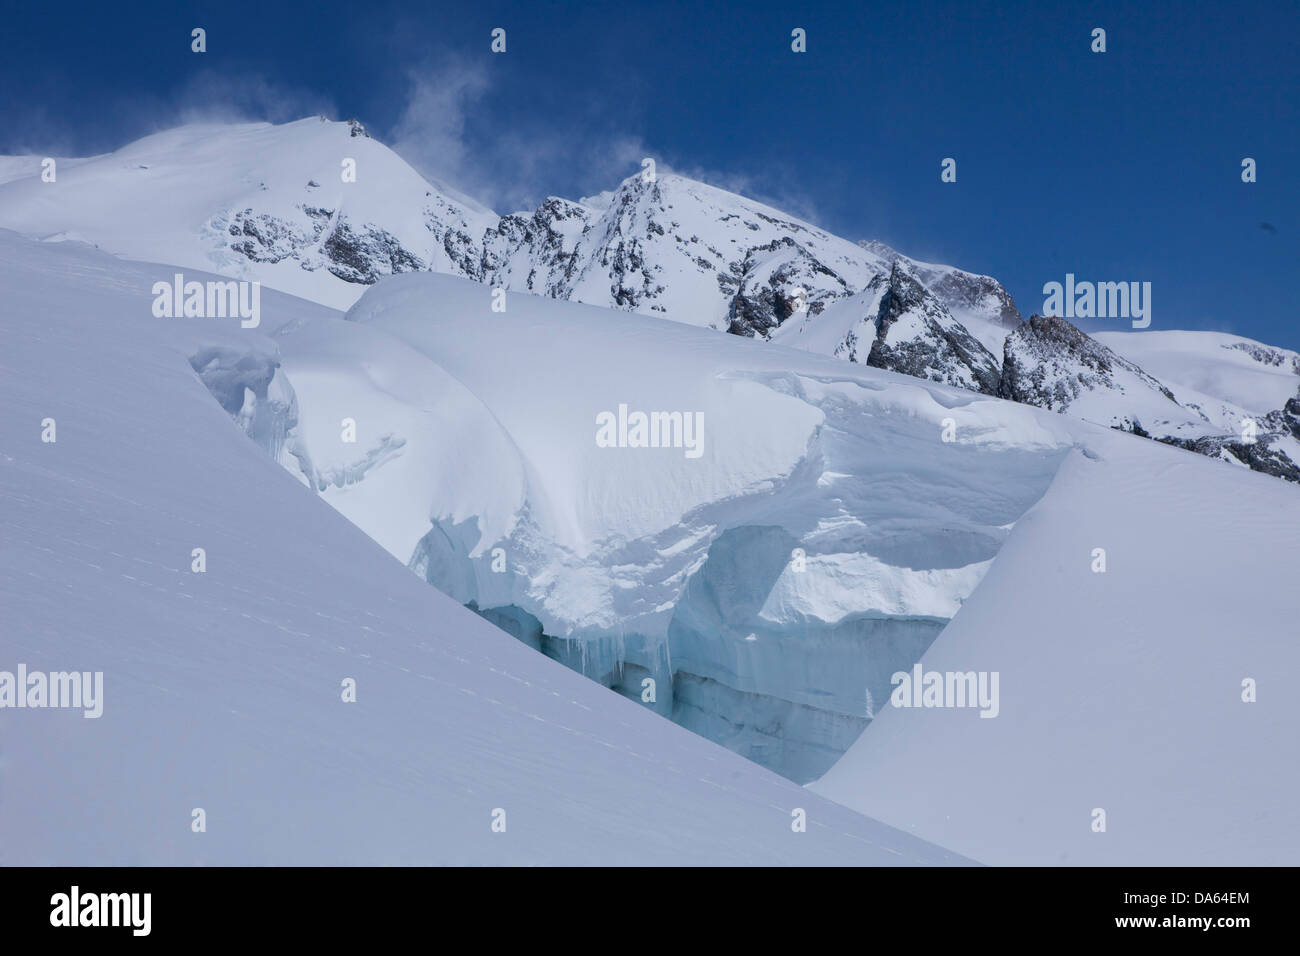 Montaña, montañas, glaciares, hielo, moraine, cantón Valais Aletsch, glaciar, invierno, paisajes, paisajes de Suiza, Europa Foto de stock